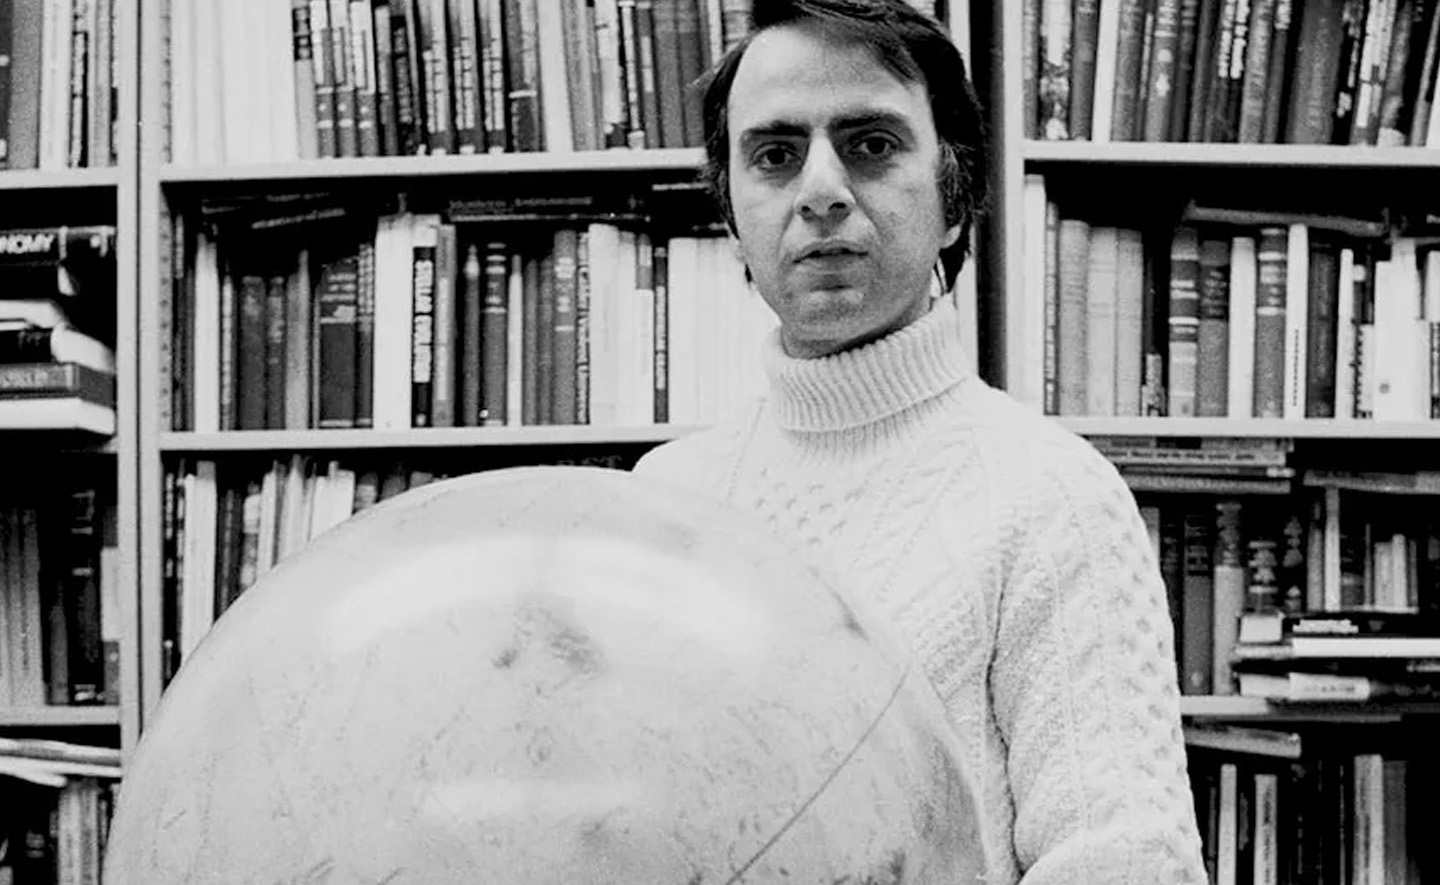 Danh sách đọc của Carl Sagan - Tác giả “Vũ trụ - Sự tiến hóa của vũ trụ, sự sống và nền văn minh”